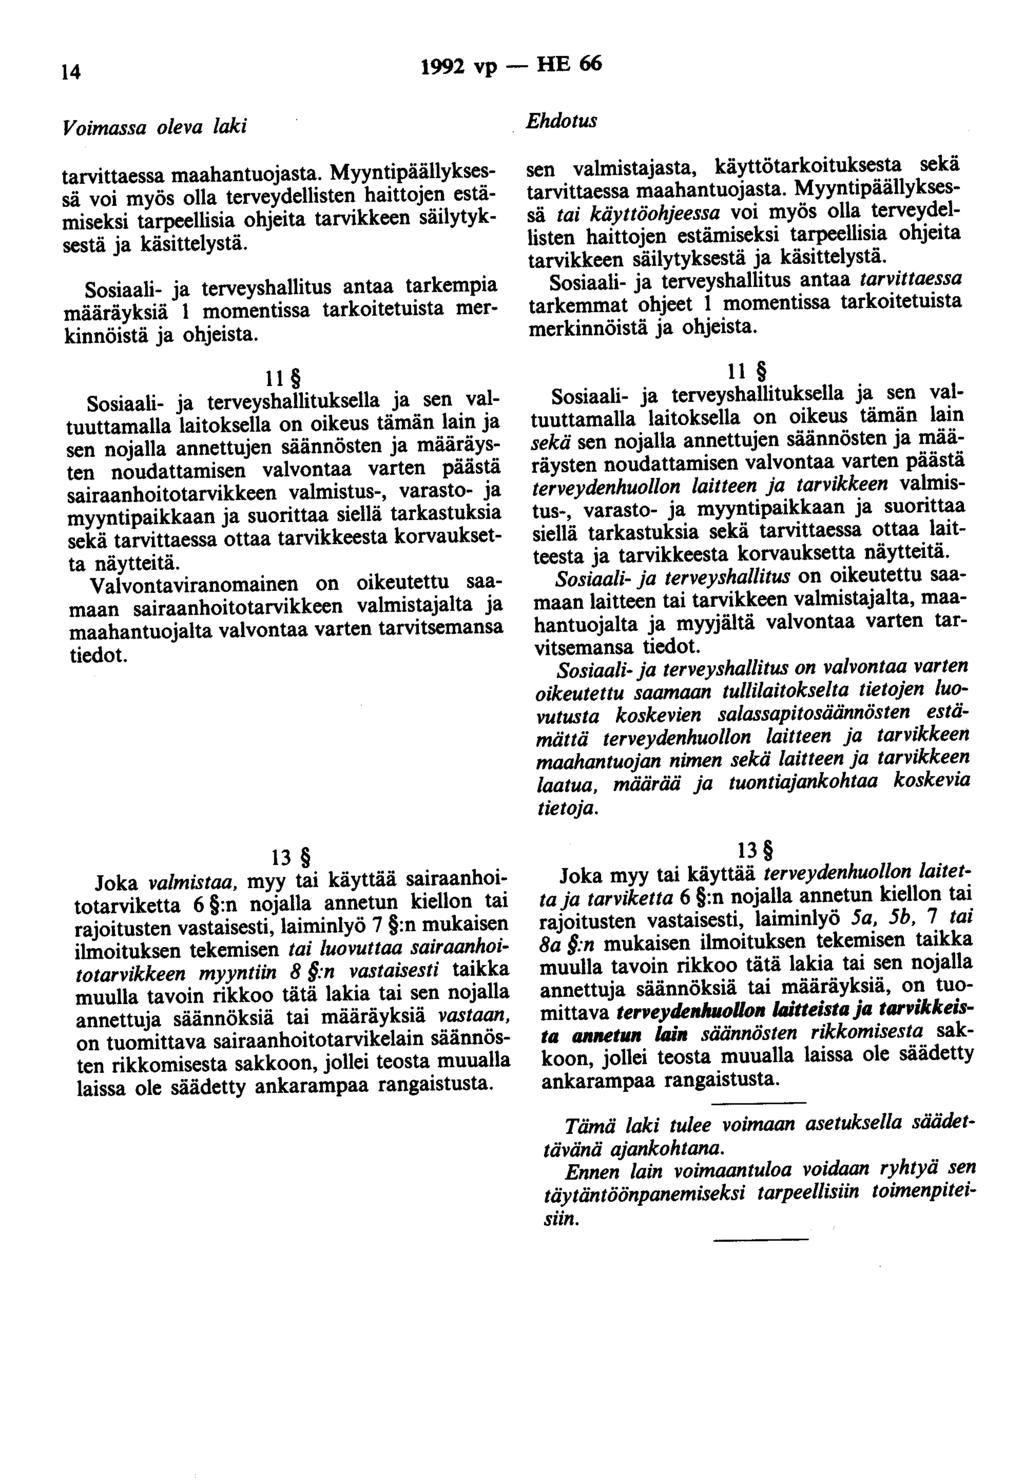 14 1992 vp - HE 66 Voimassa oleva laki tarvittaessa maahantuojasta.